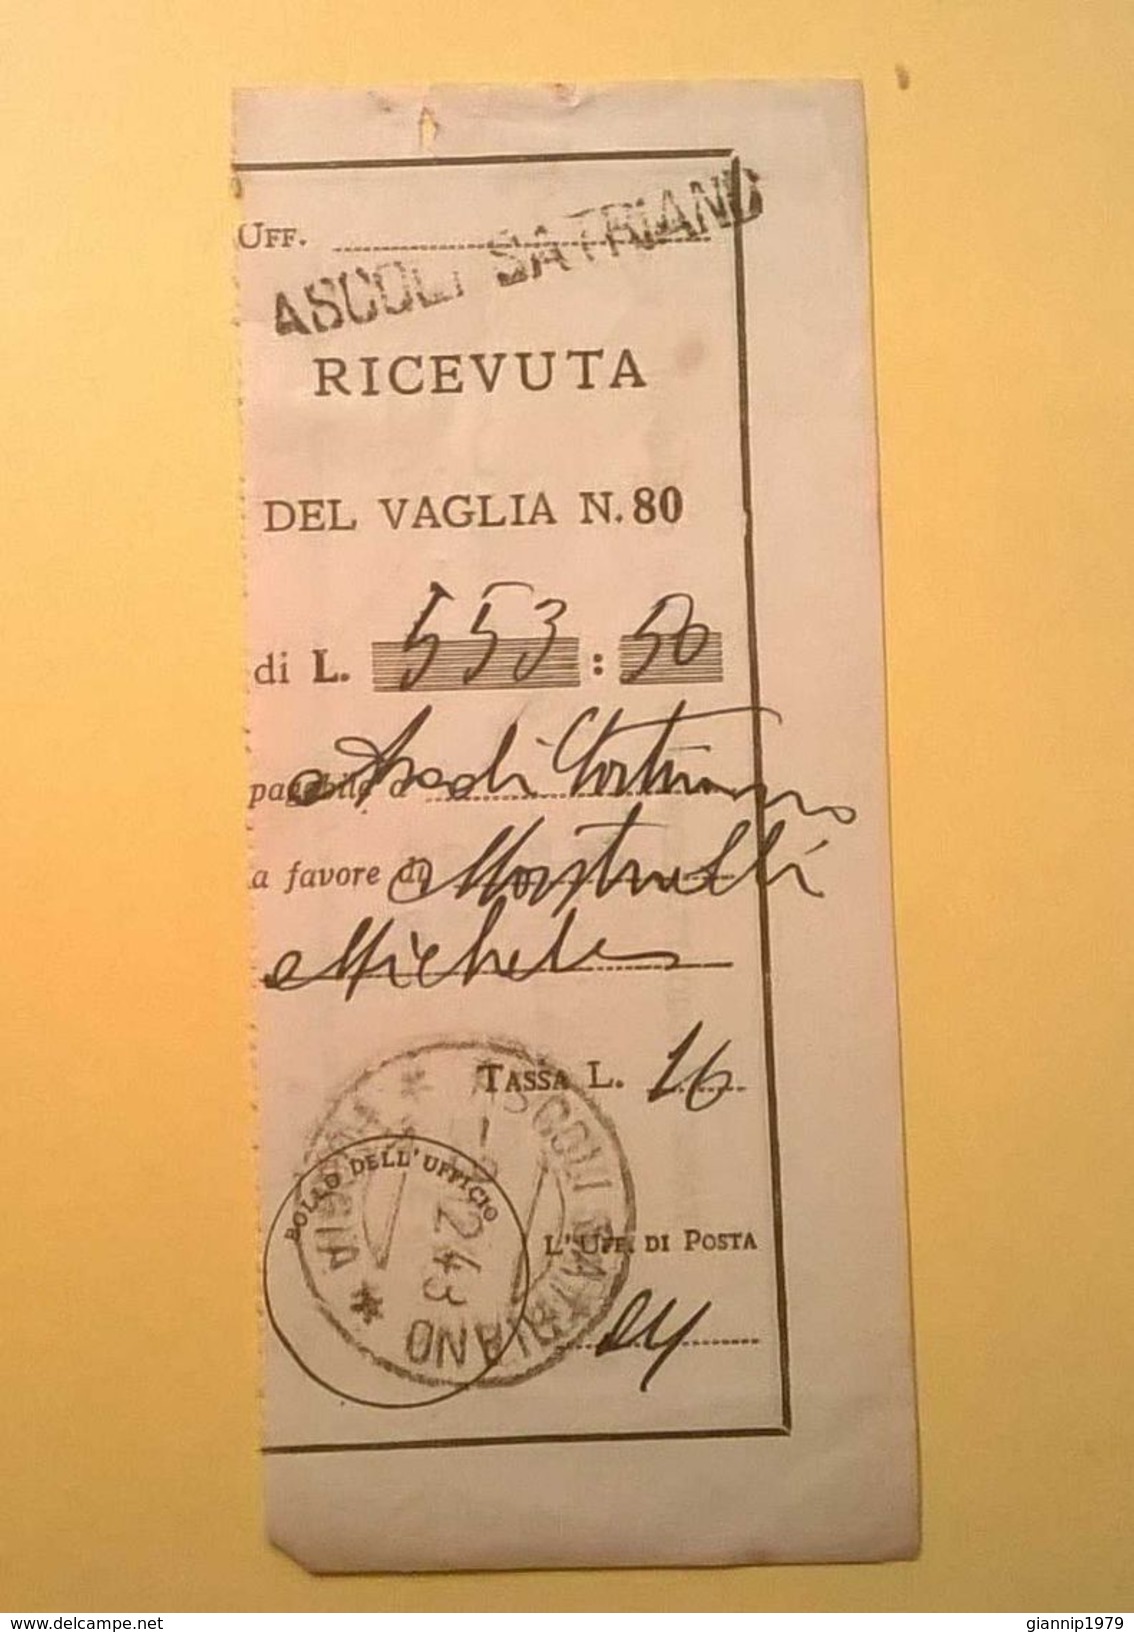 VAGLIA POSTALE RICEVUTA ASCOLI SATRIANO FOGGIA 1948 - Vaglia Postale